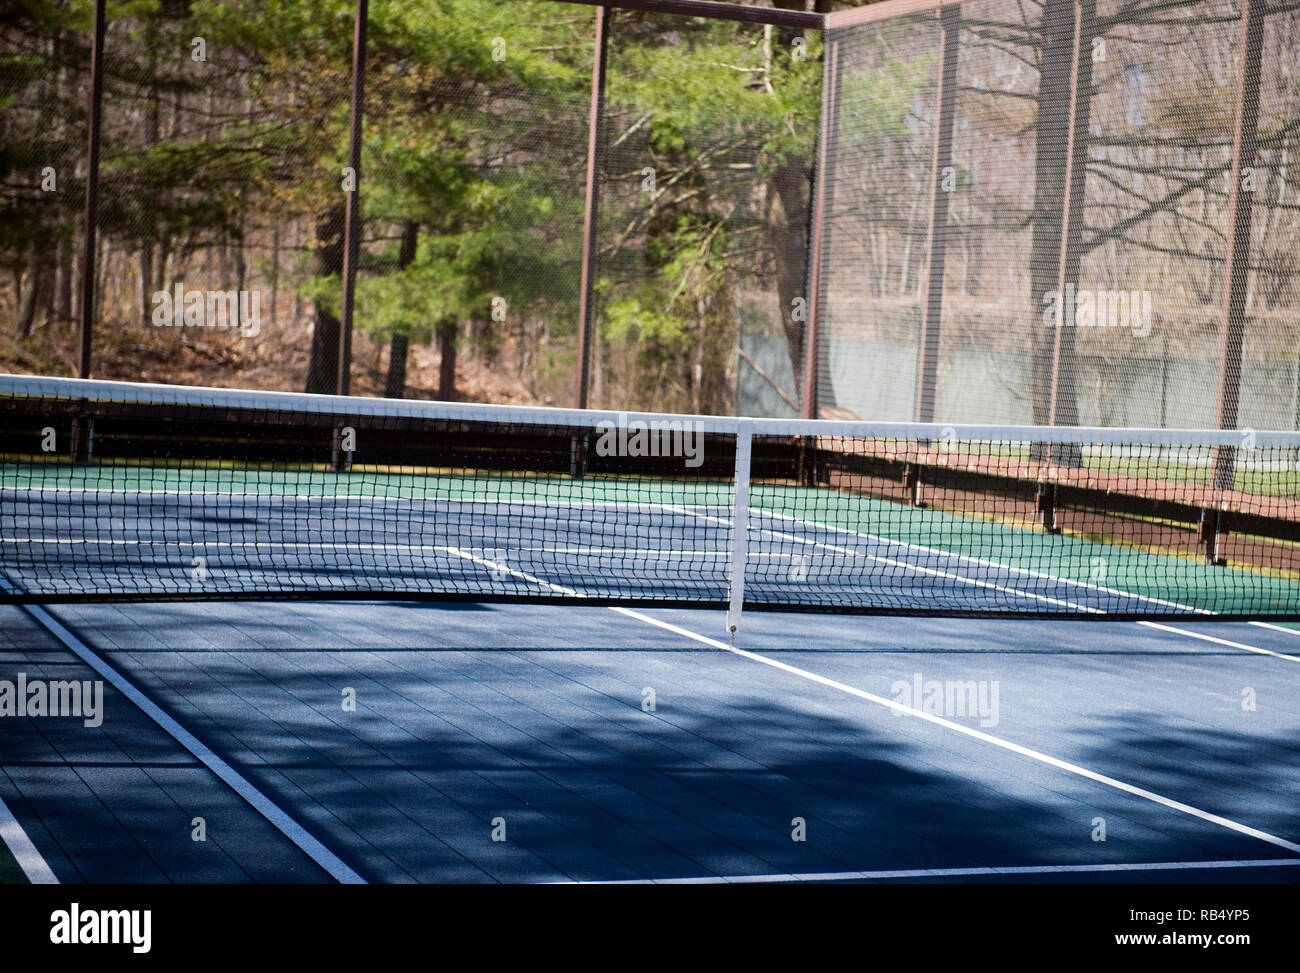 Plataforma de paddle tenis en maderas en entorno suburbano club privado Foto de stock